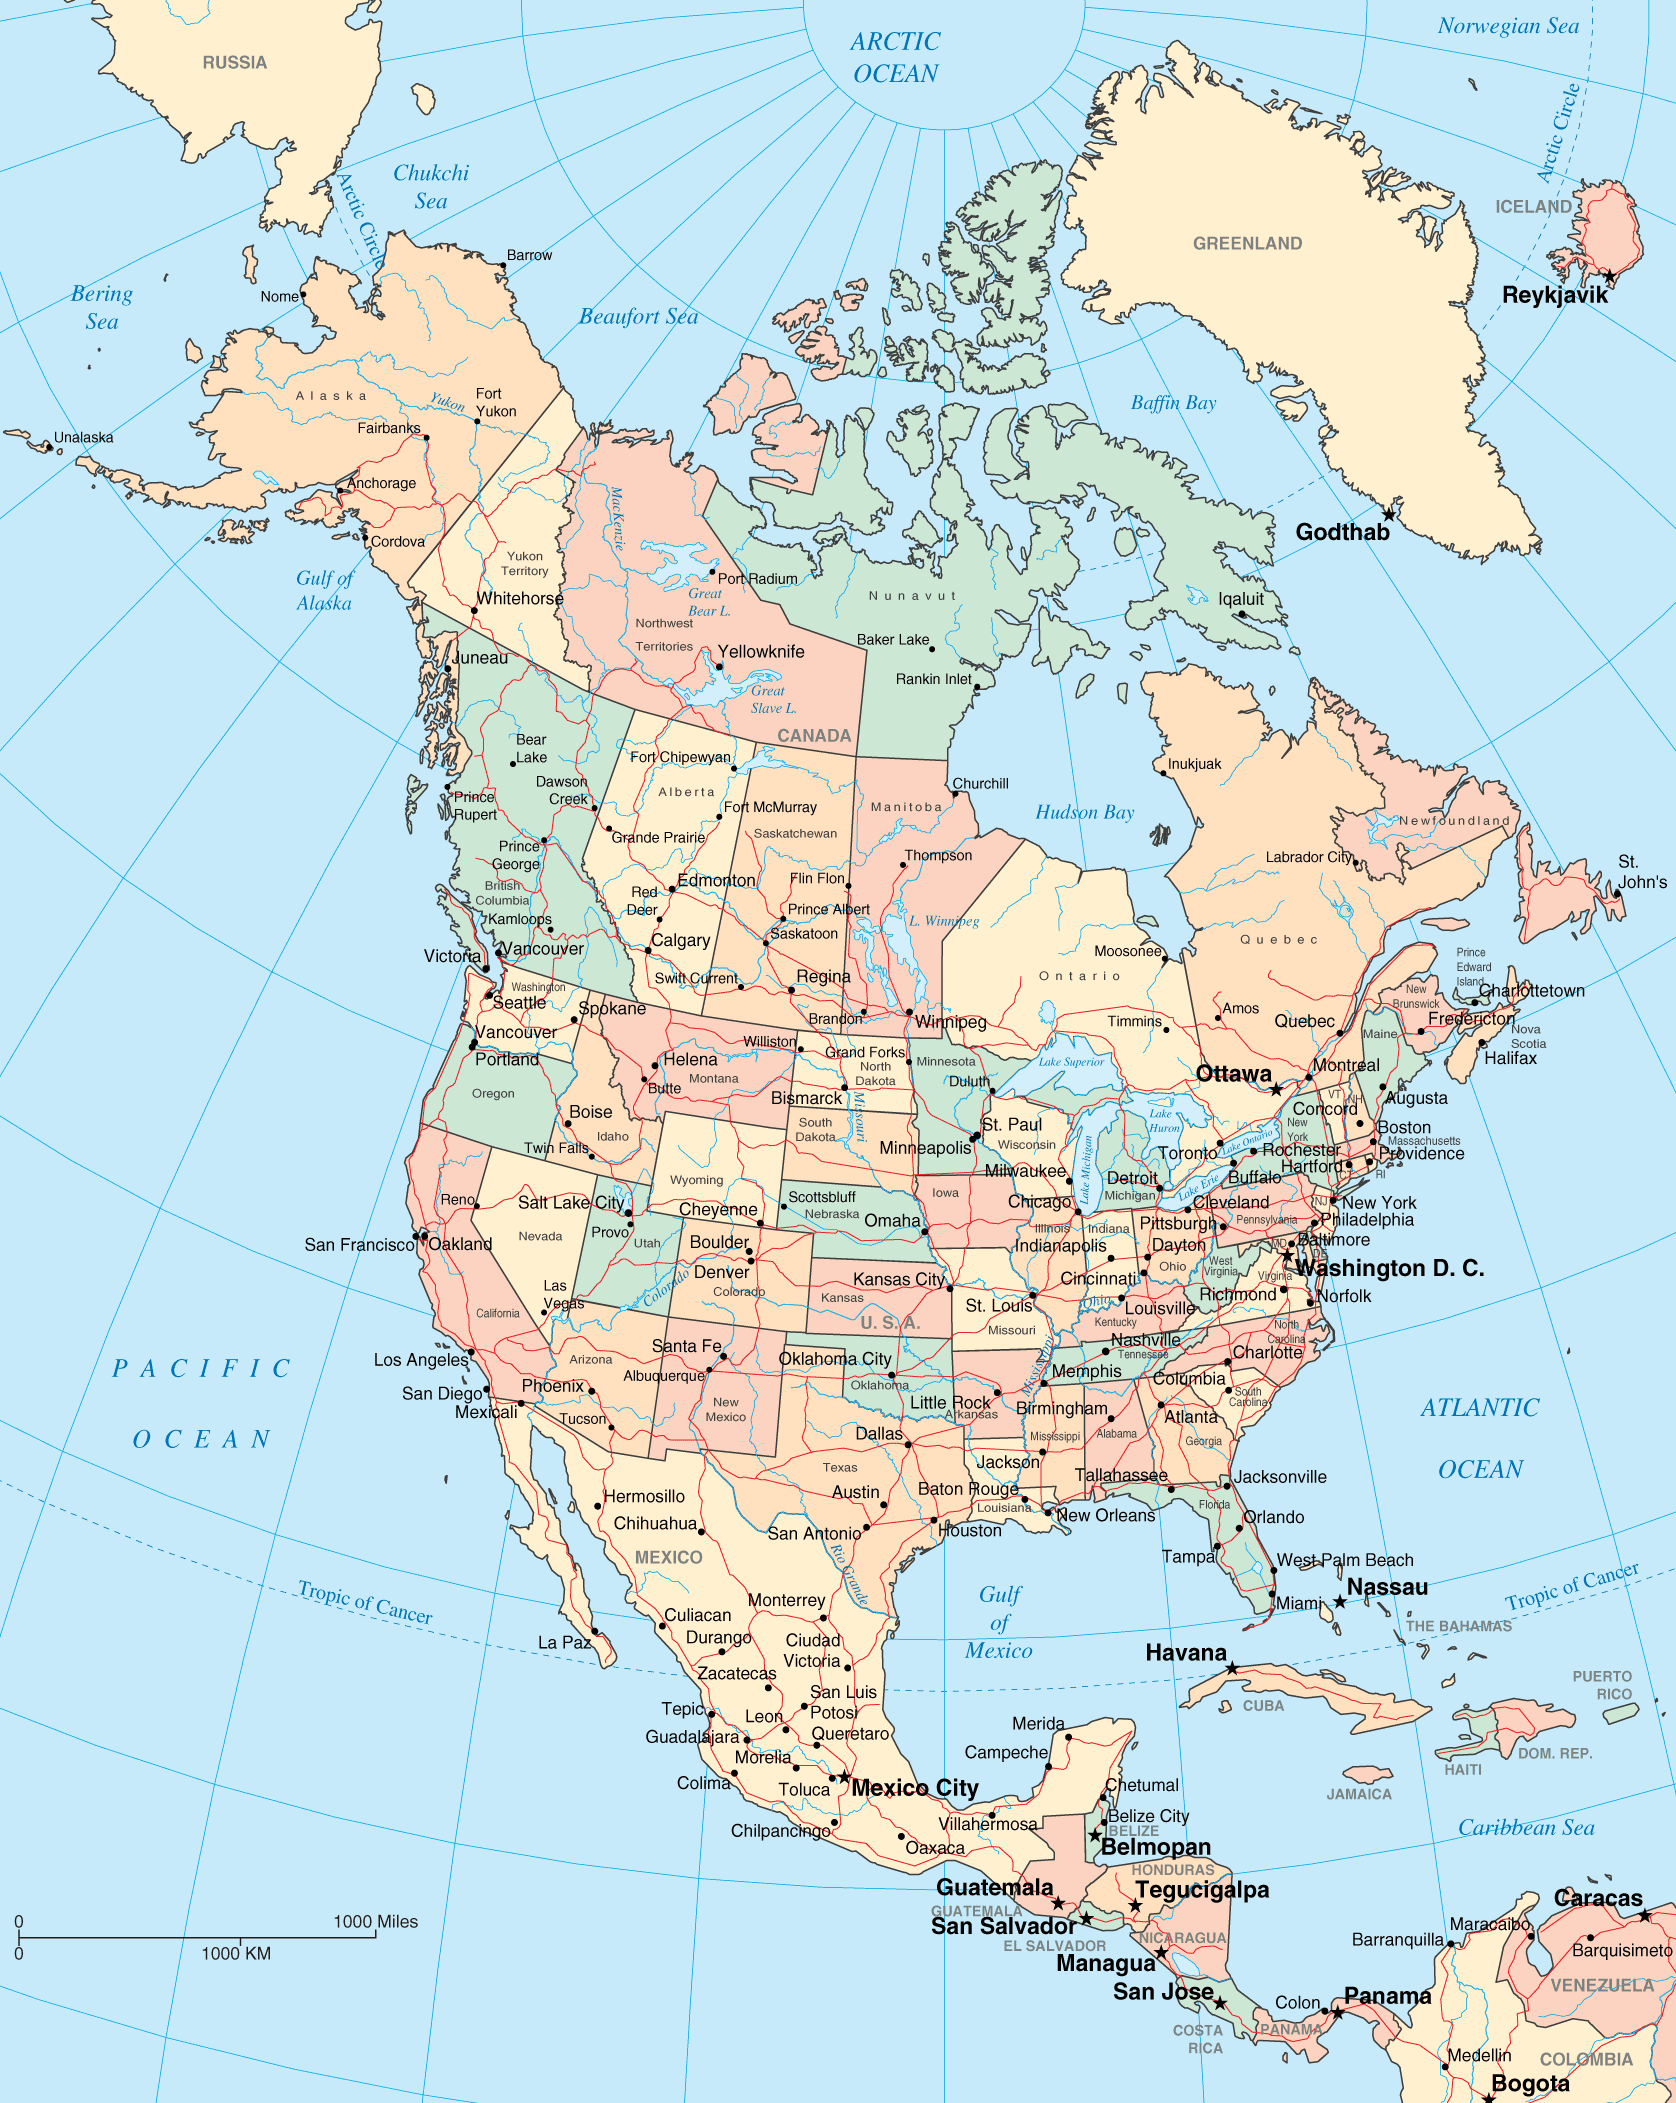 Mapa Político de América del Norte - Tamaño completo